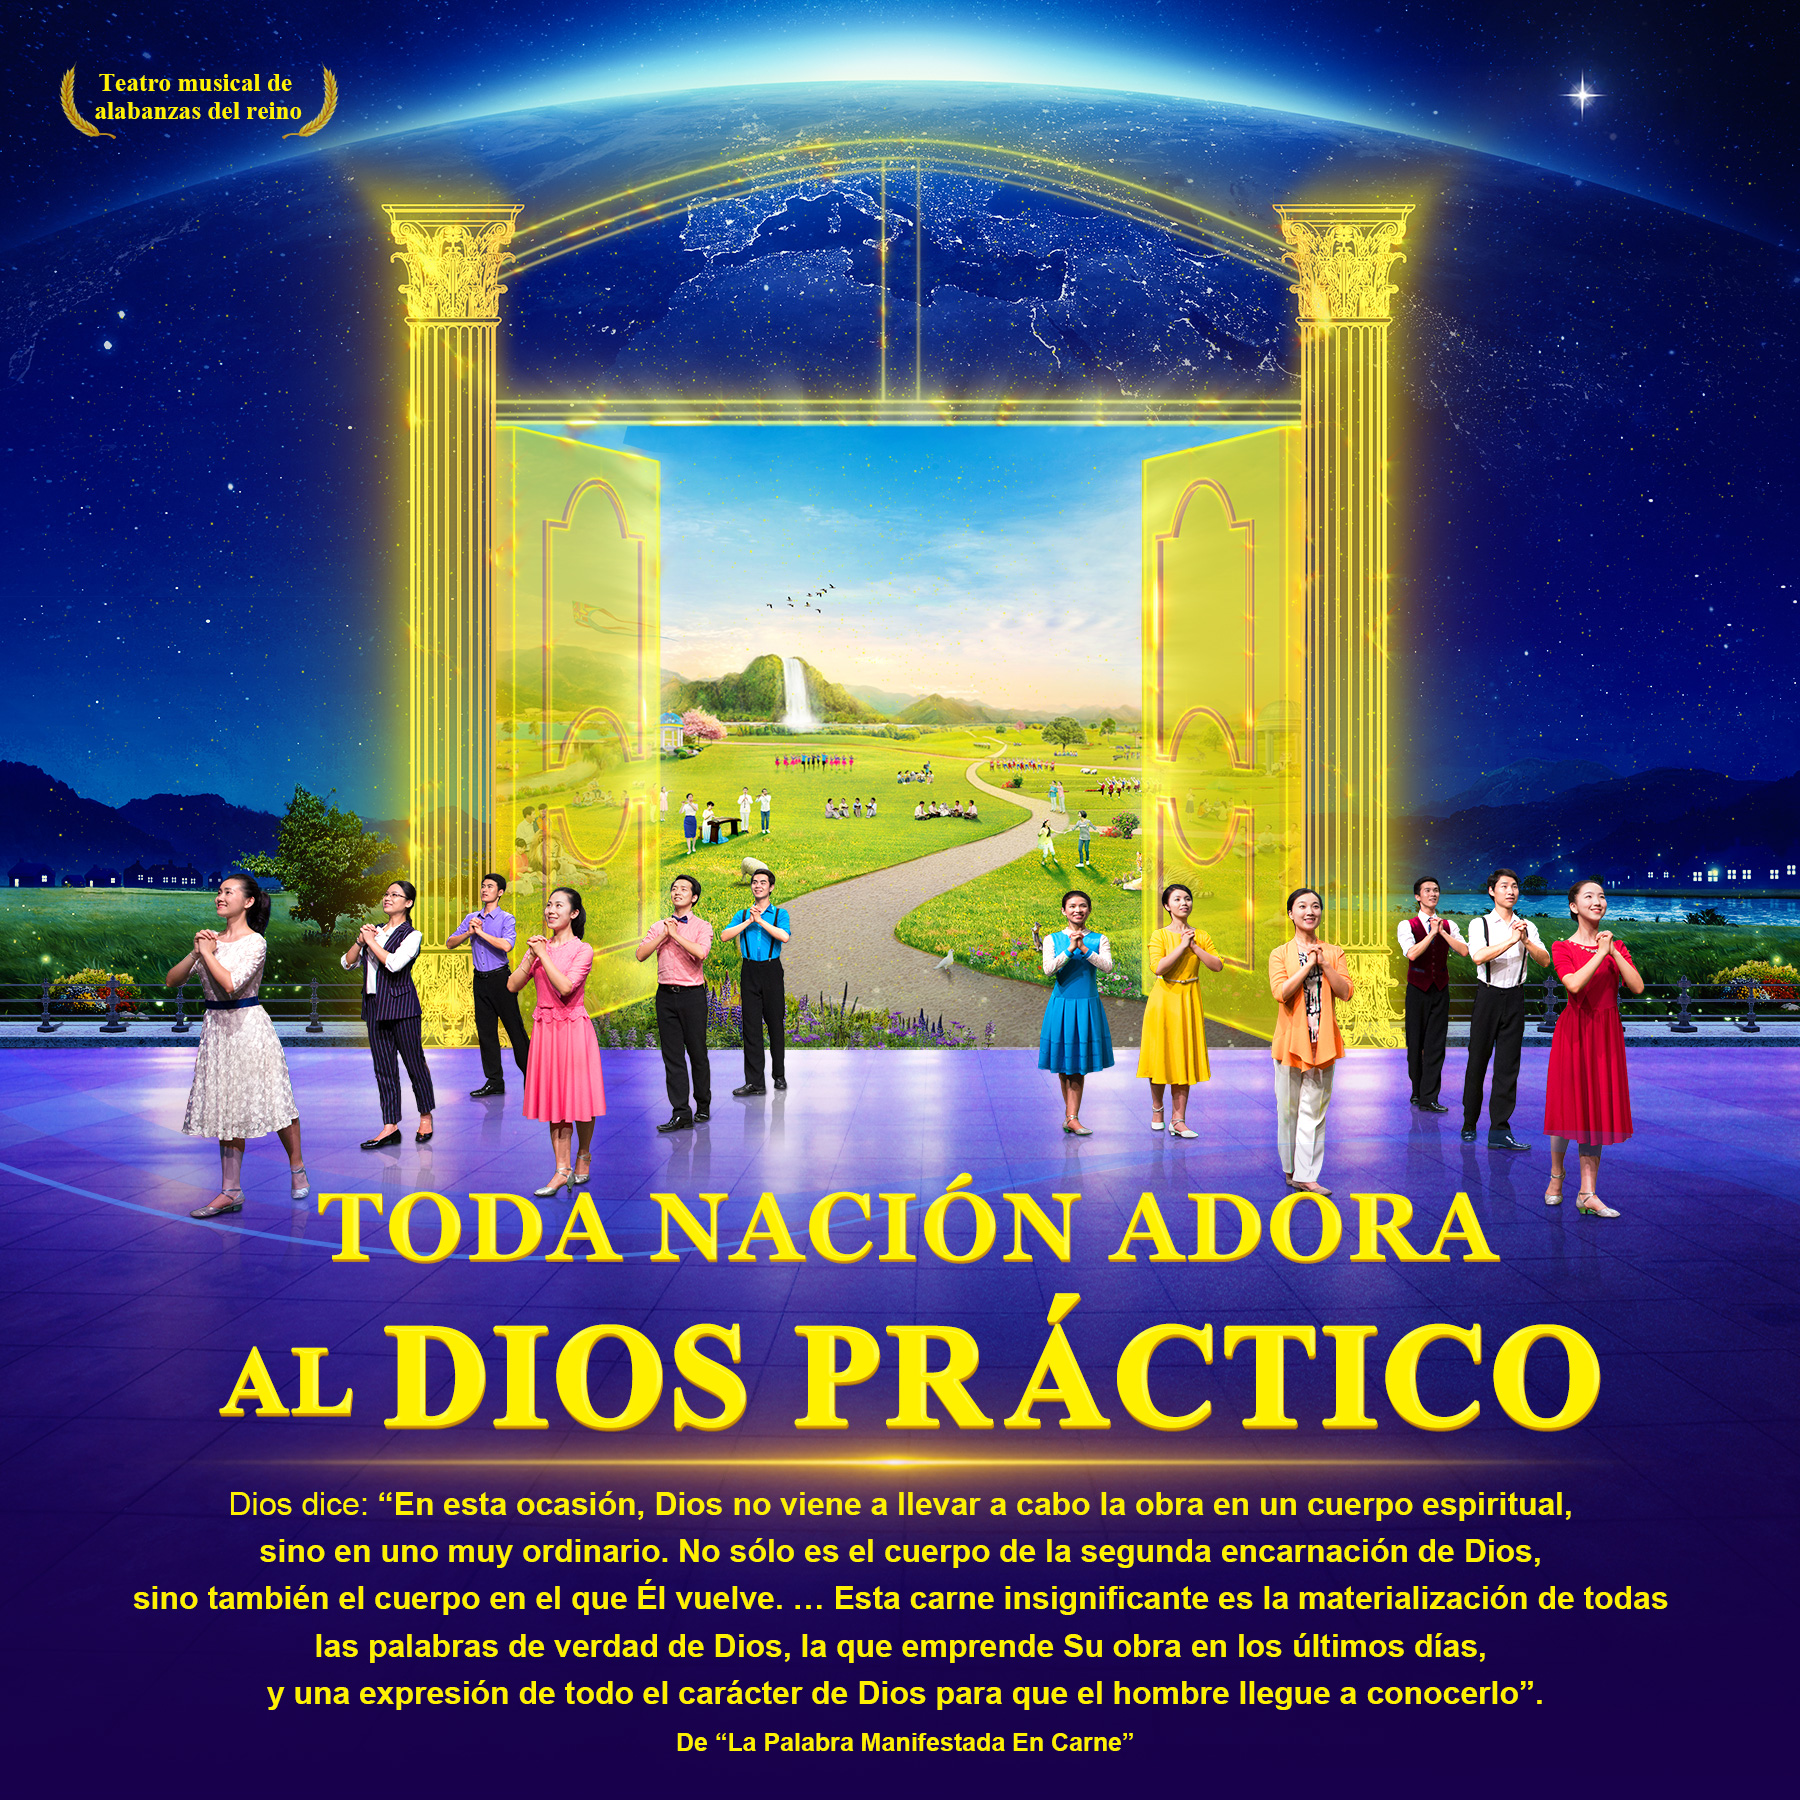 Teatro musical de alabanzas del reino: Toda nación adora al Dios práctico